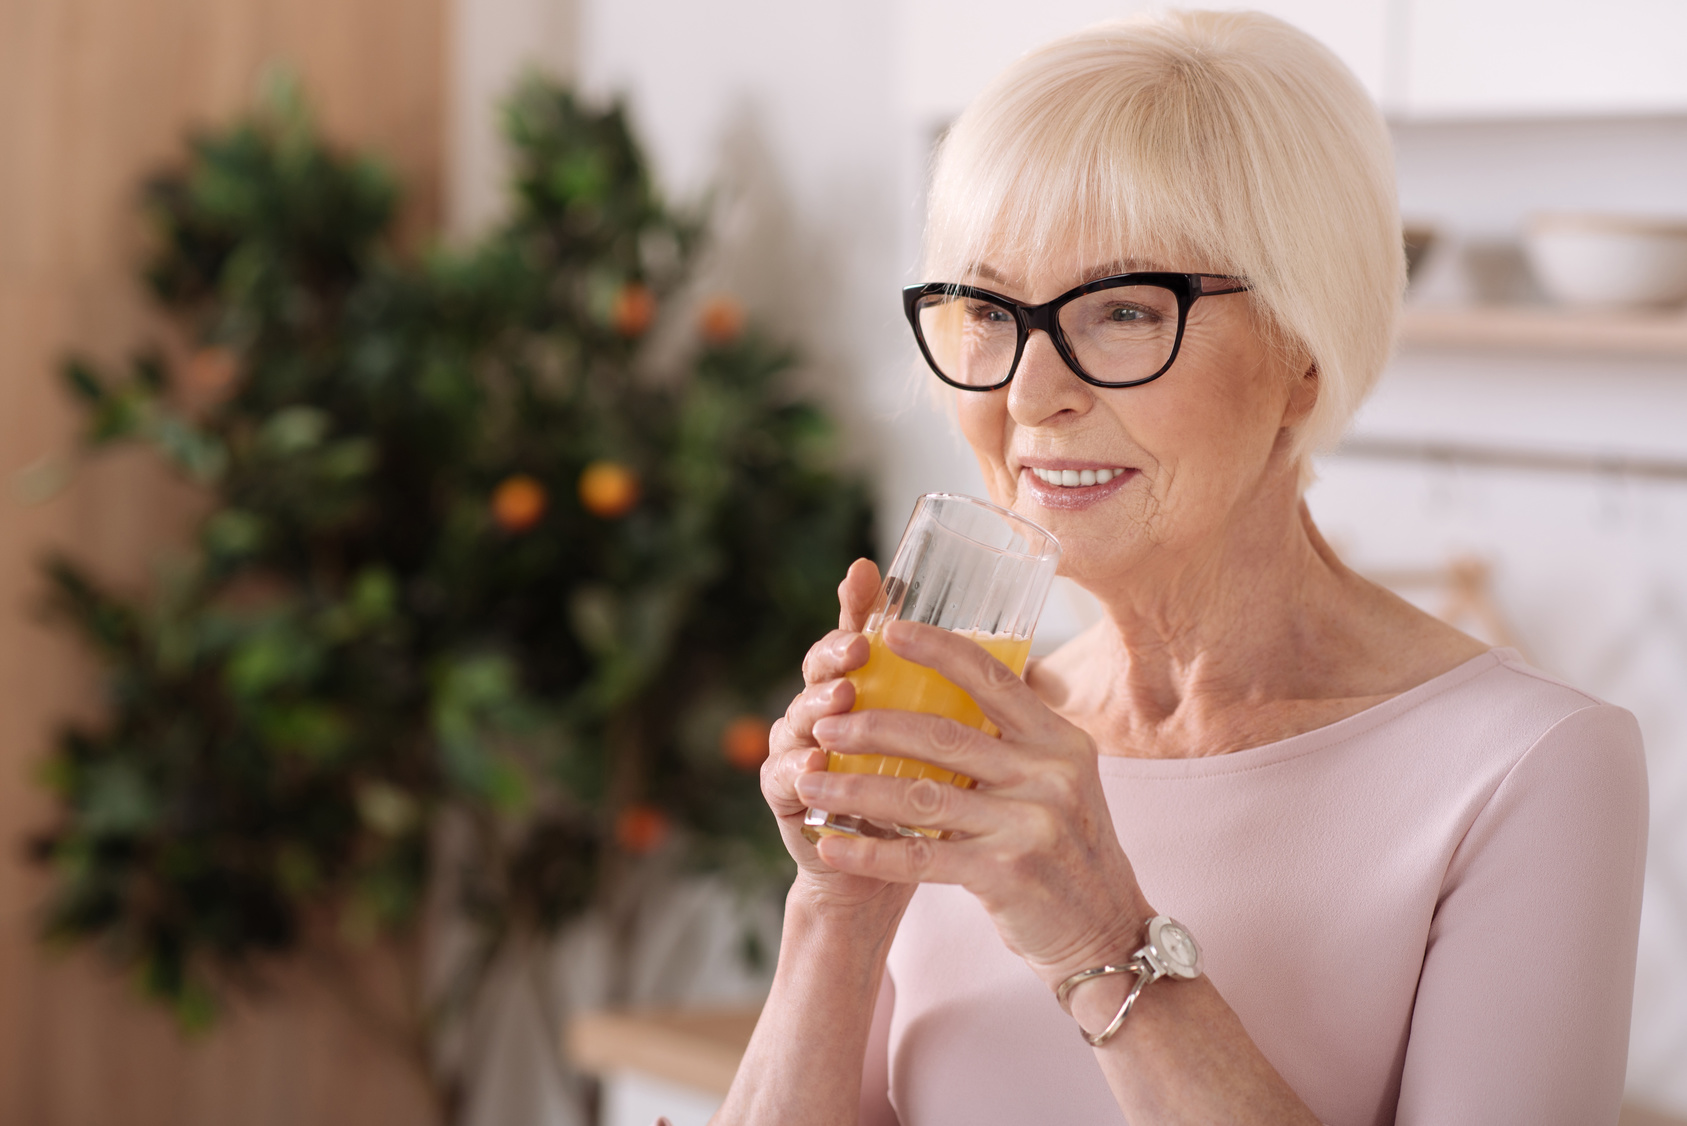 Витамины для пожилых людей, поставляемые в пищу или дополненные в виде специальных препаратов для укрепления организма пожилых людей, являются отличным способом замедления естественных процессов старения